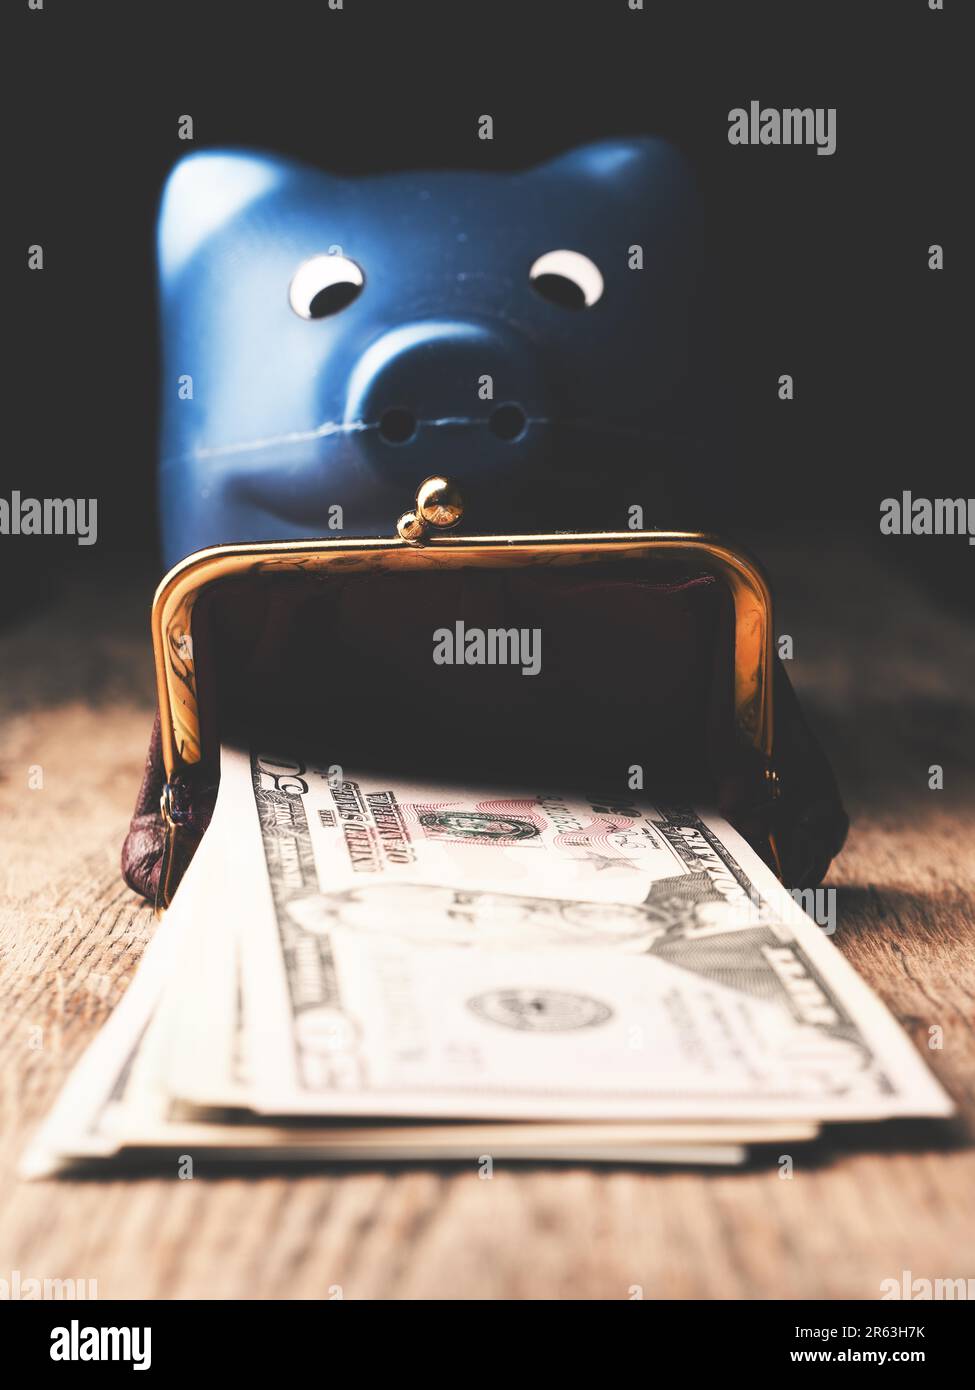 Dollaro banconote su di un tavolo di legno, l'abbondanza o la ricchezza concept Foto Stock